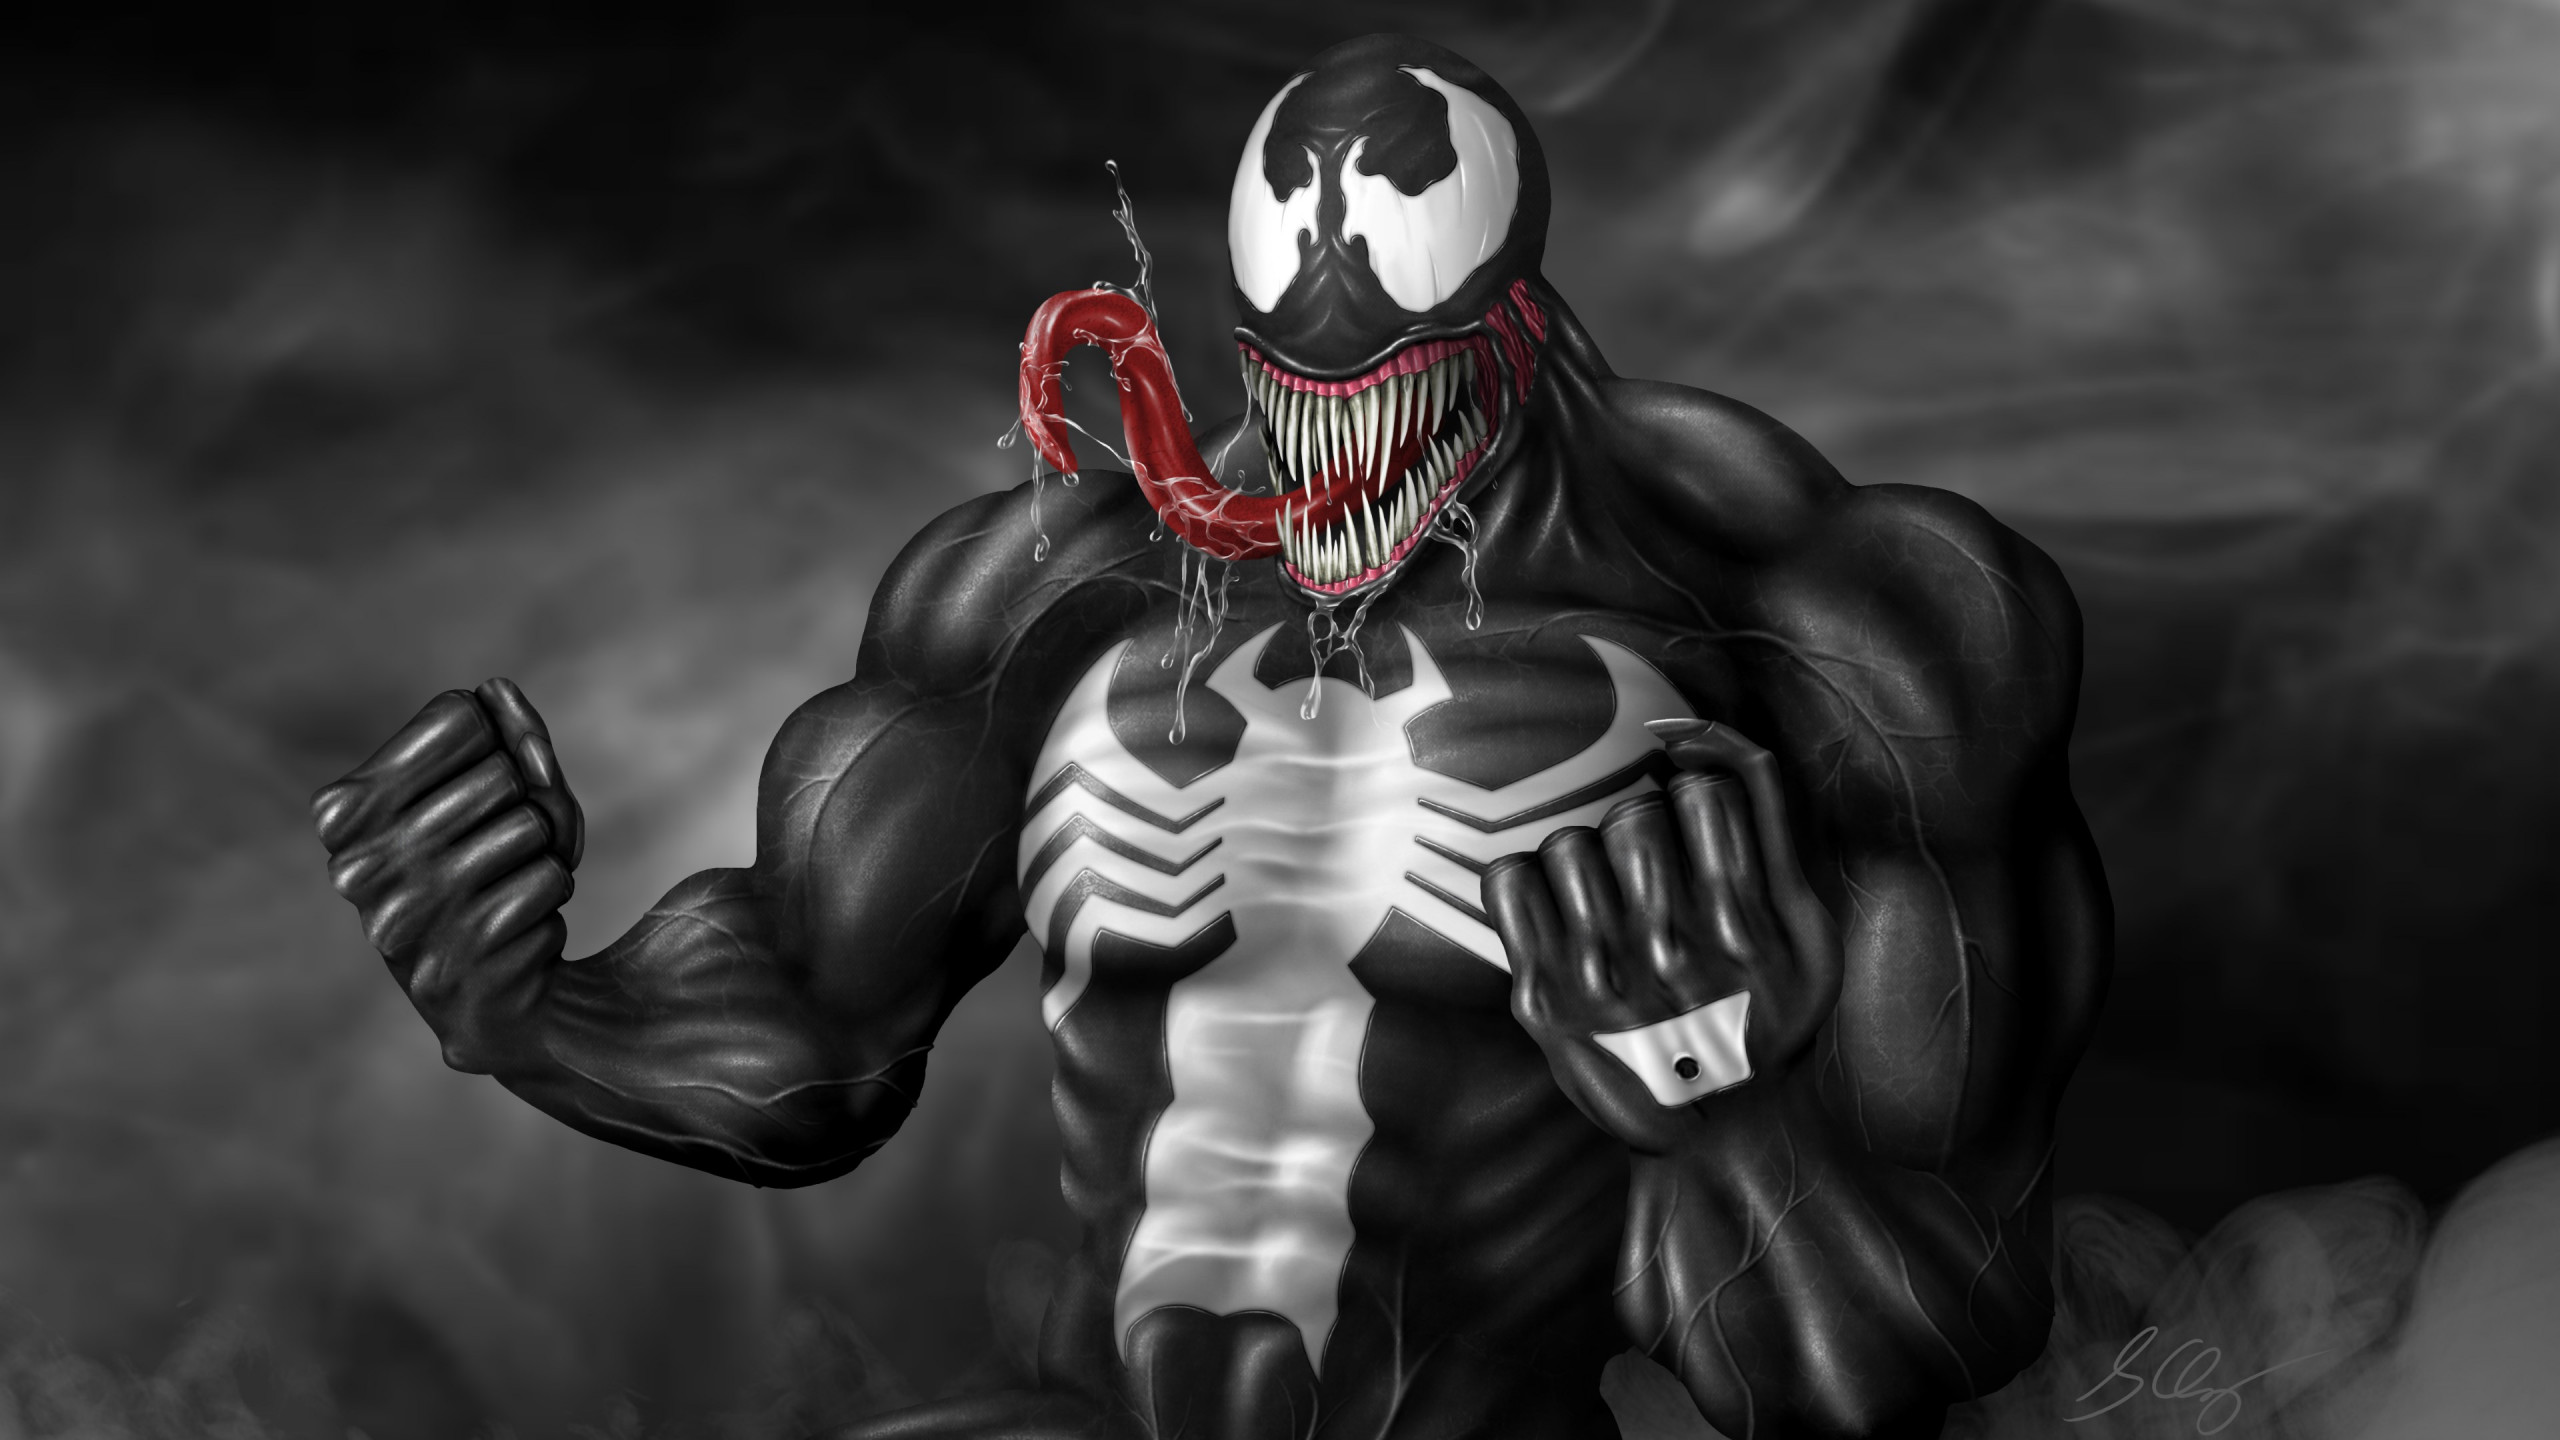 Download wallpaper: Venom fan art 2560x1440